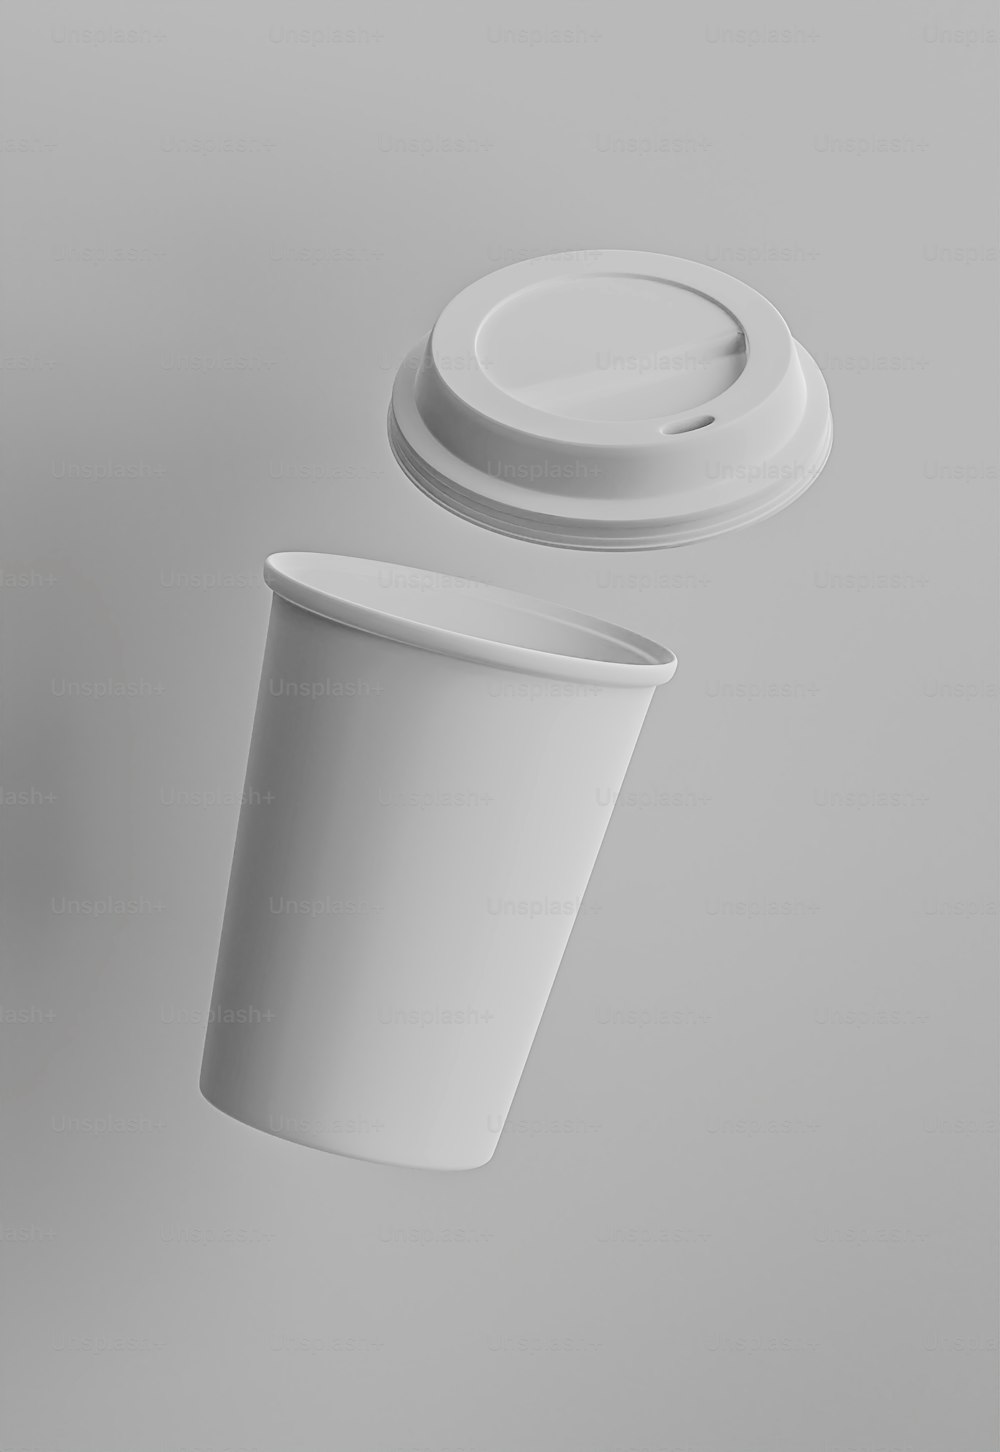 ふた付きの白いカップと蓋付きの白いカップ